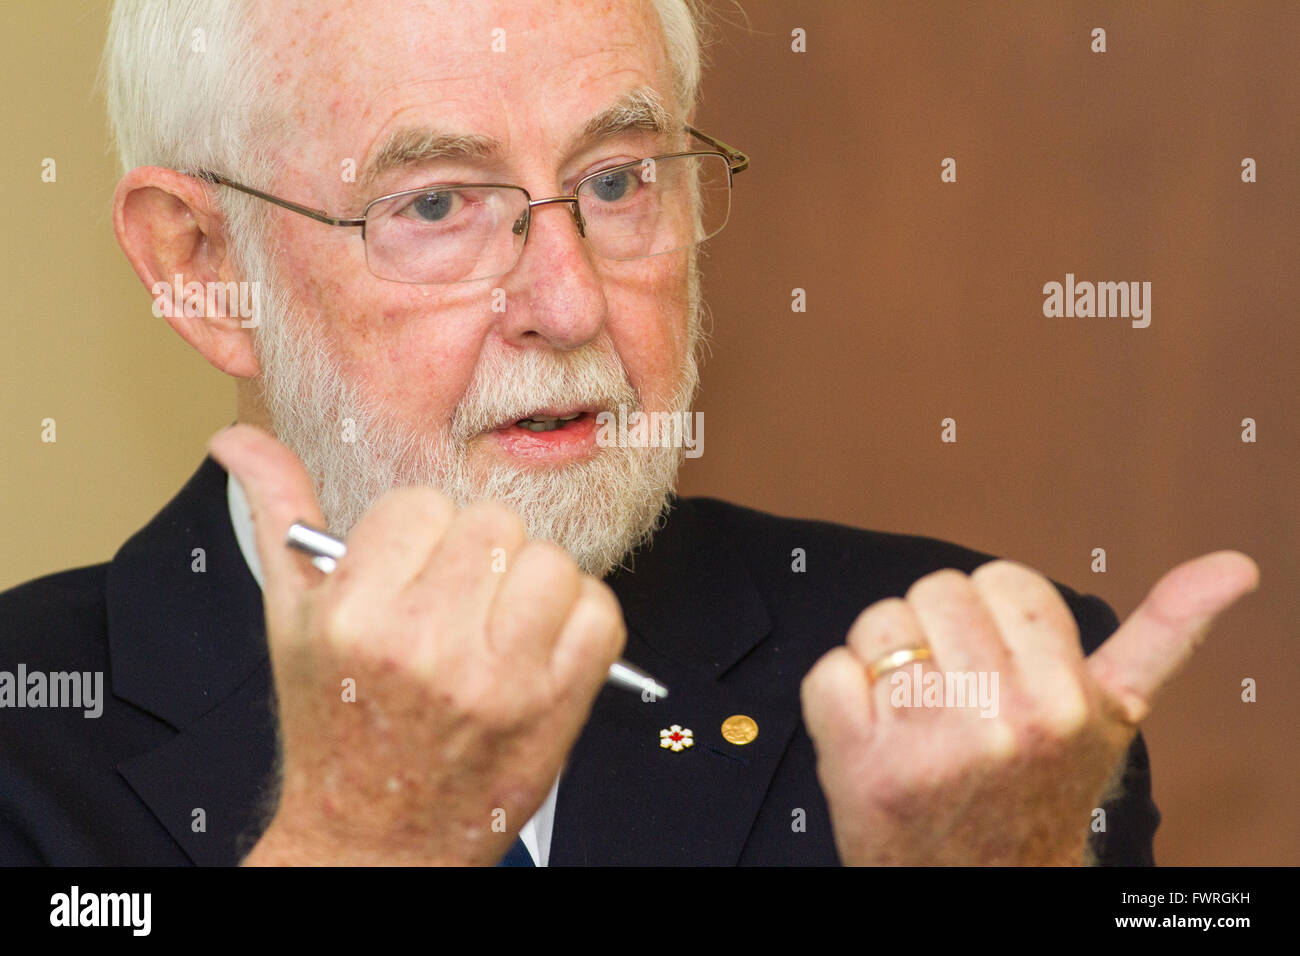 Premio Nobel co-vincitore in fisica Arthur McDonald parla presso la Queen's University di Kingston, Ont., il 11 marzo 2016. Foto di Lar Foto Stock